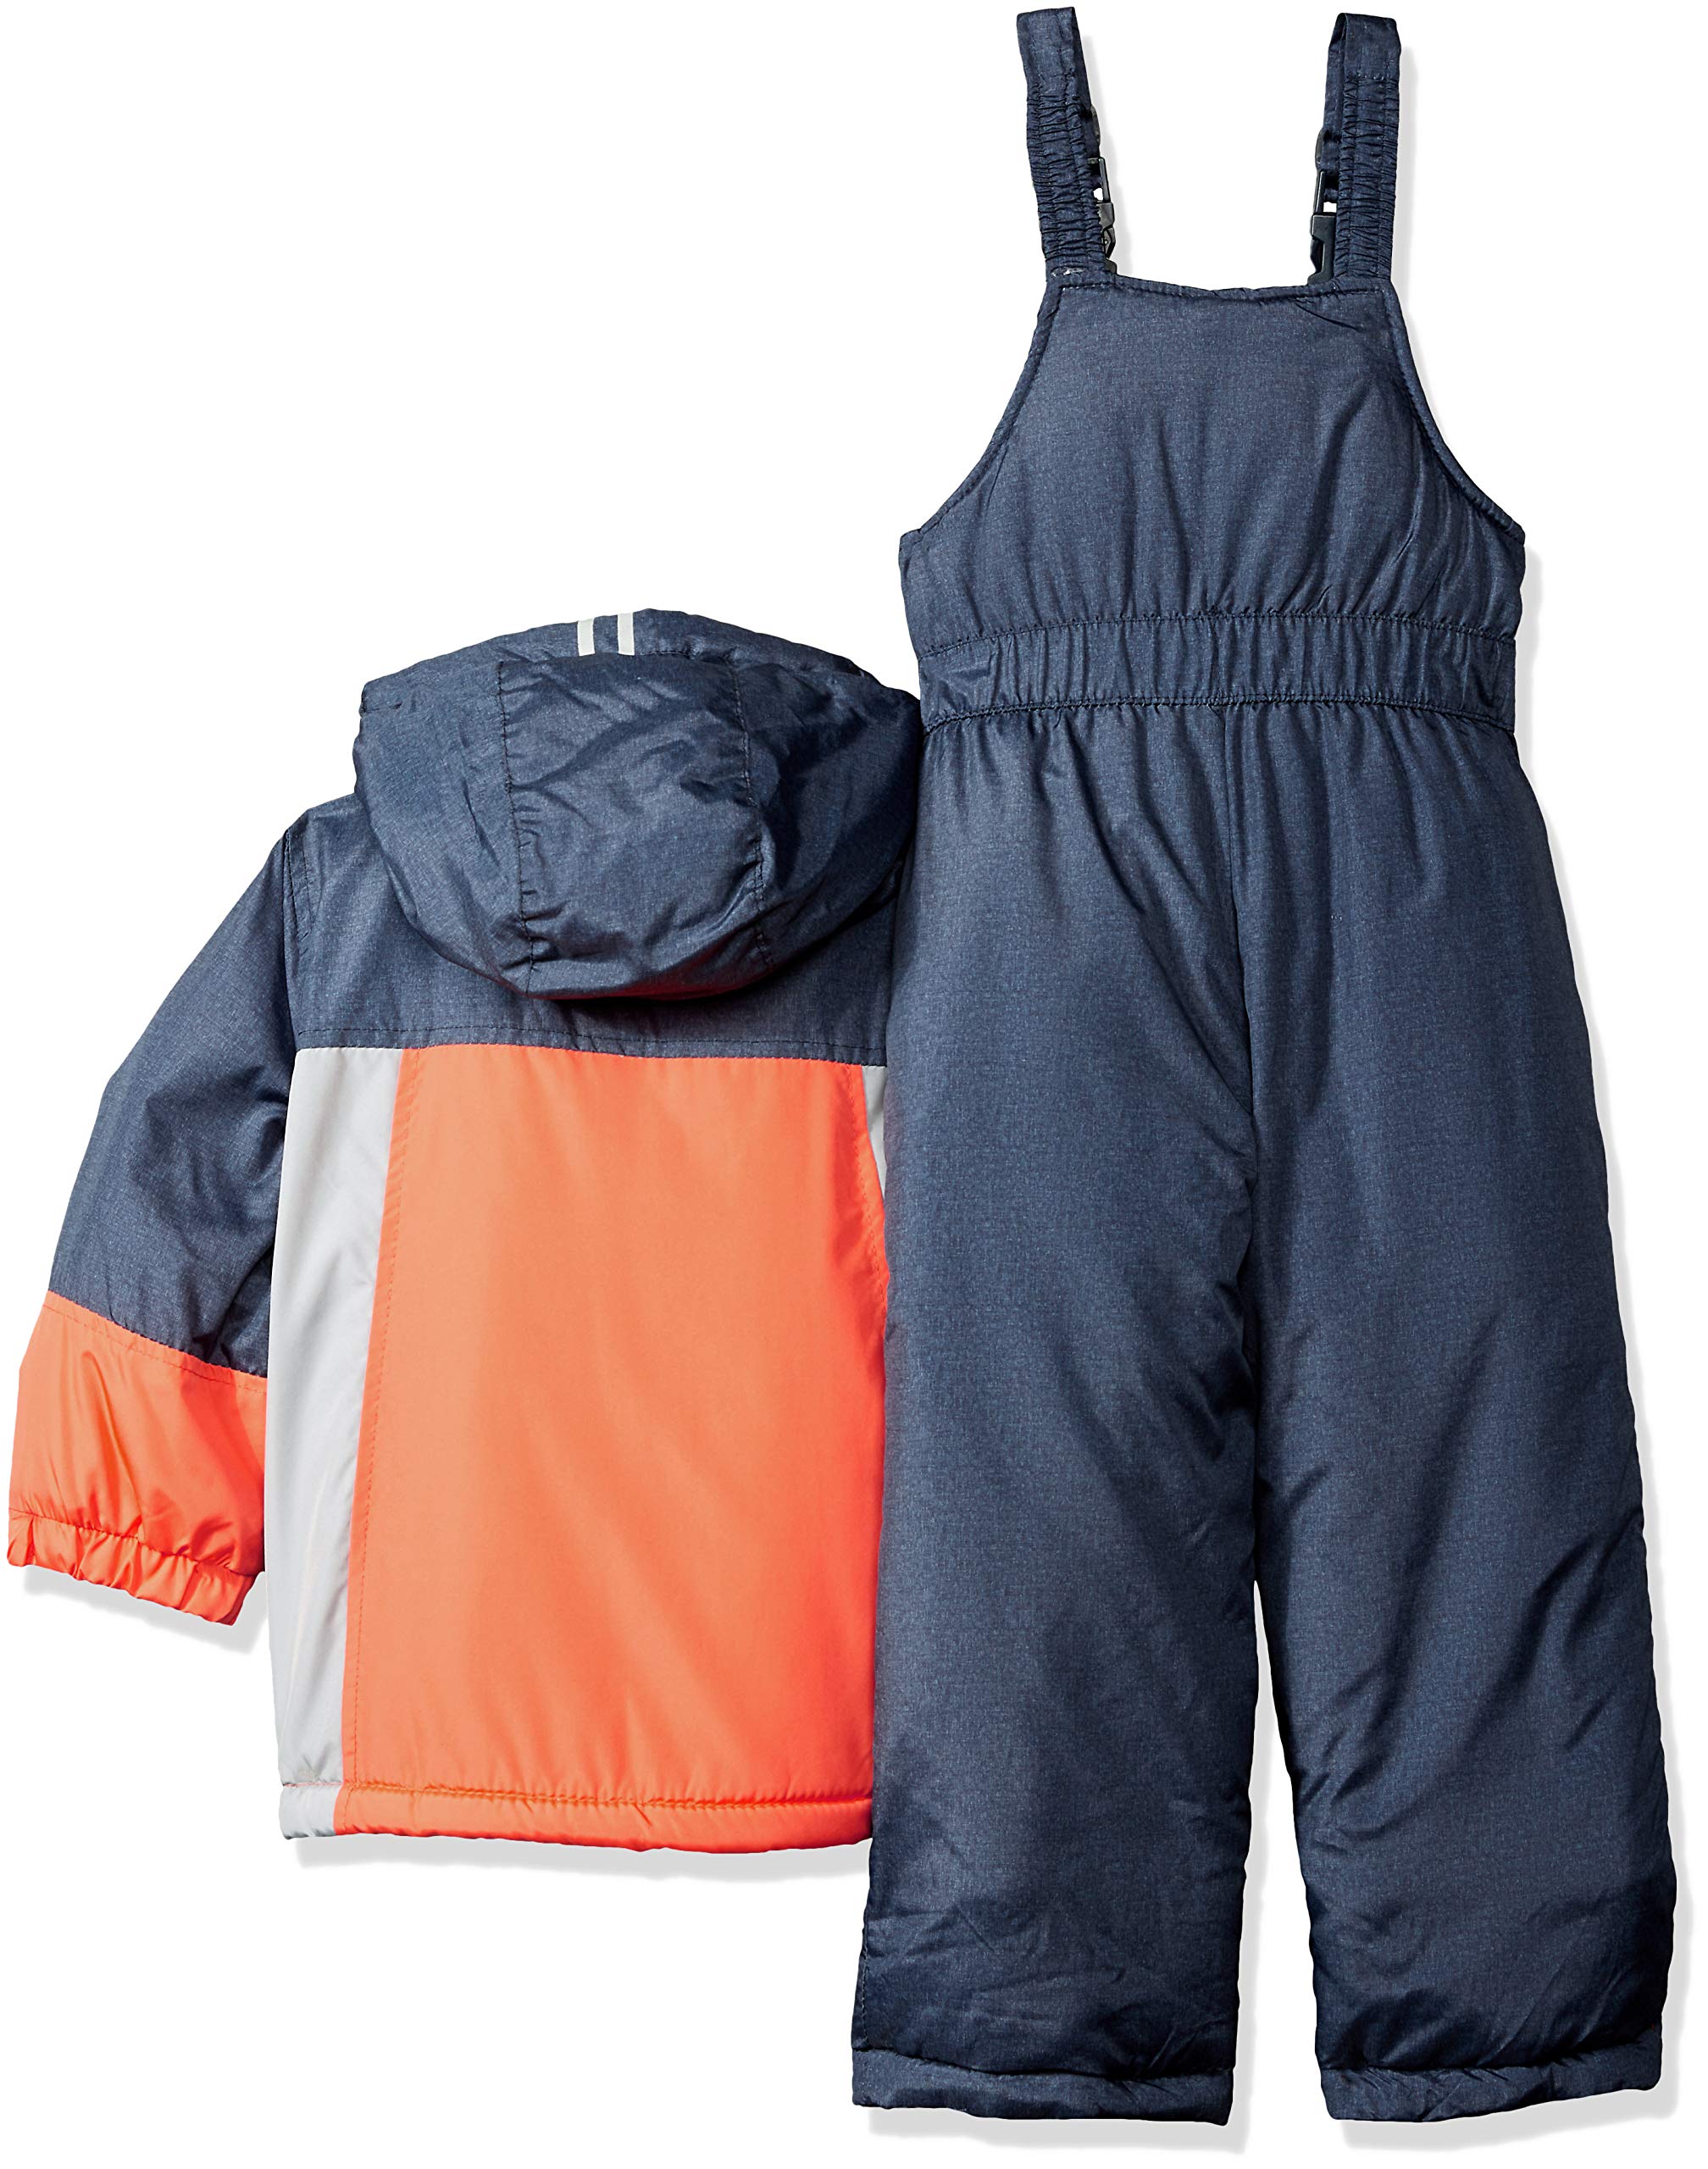 OshKosh B'Gosh Boys' Ski Jacket and Snowbib Snowsuit Set